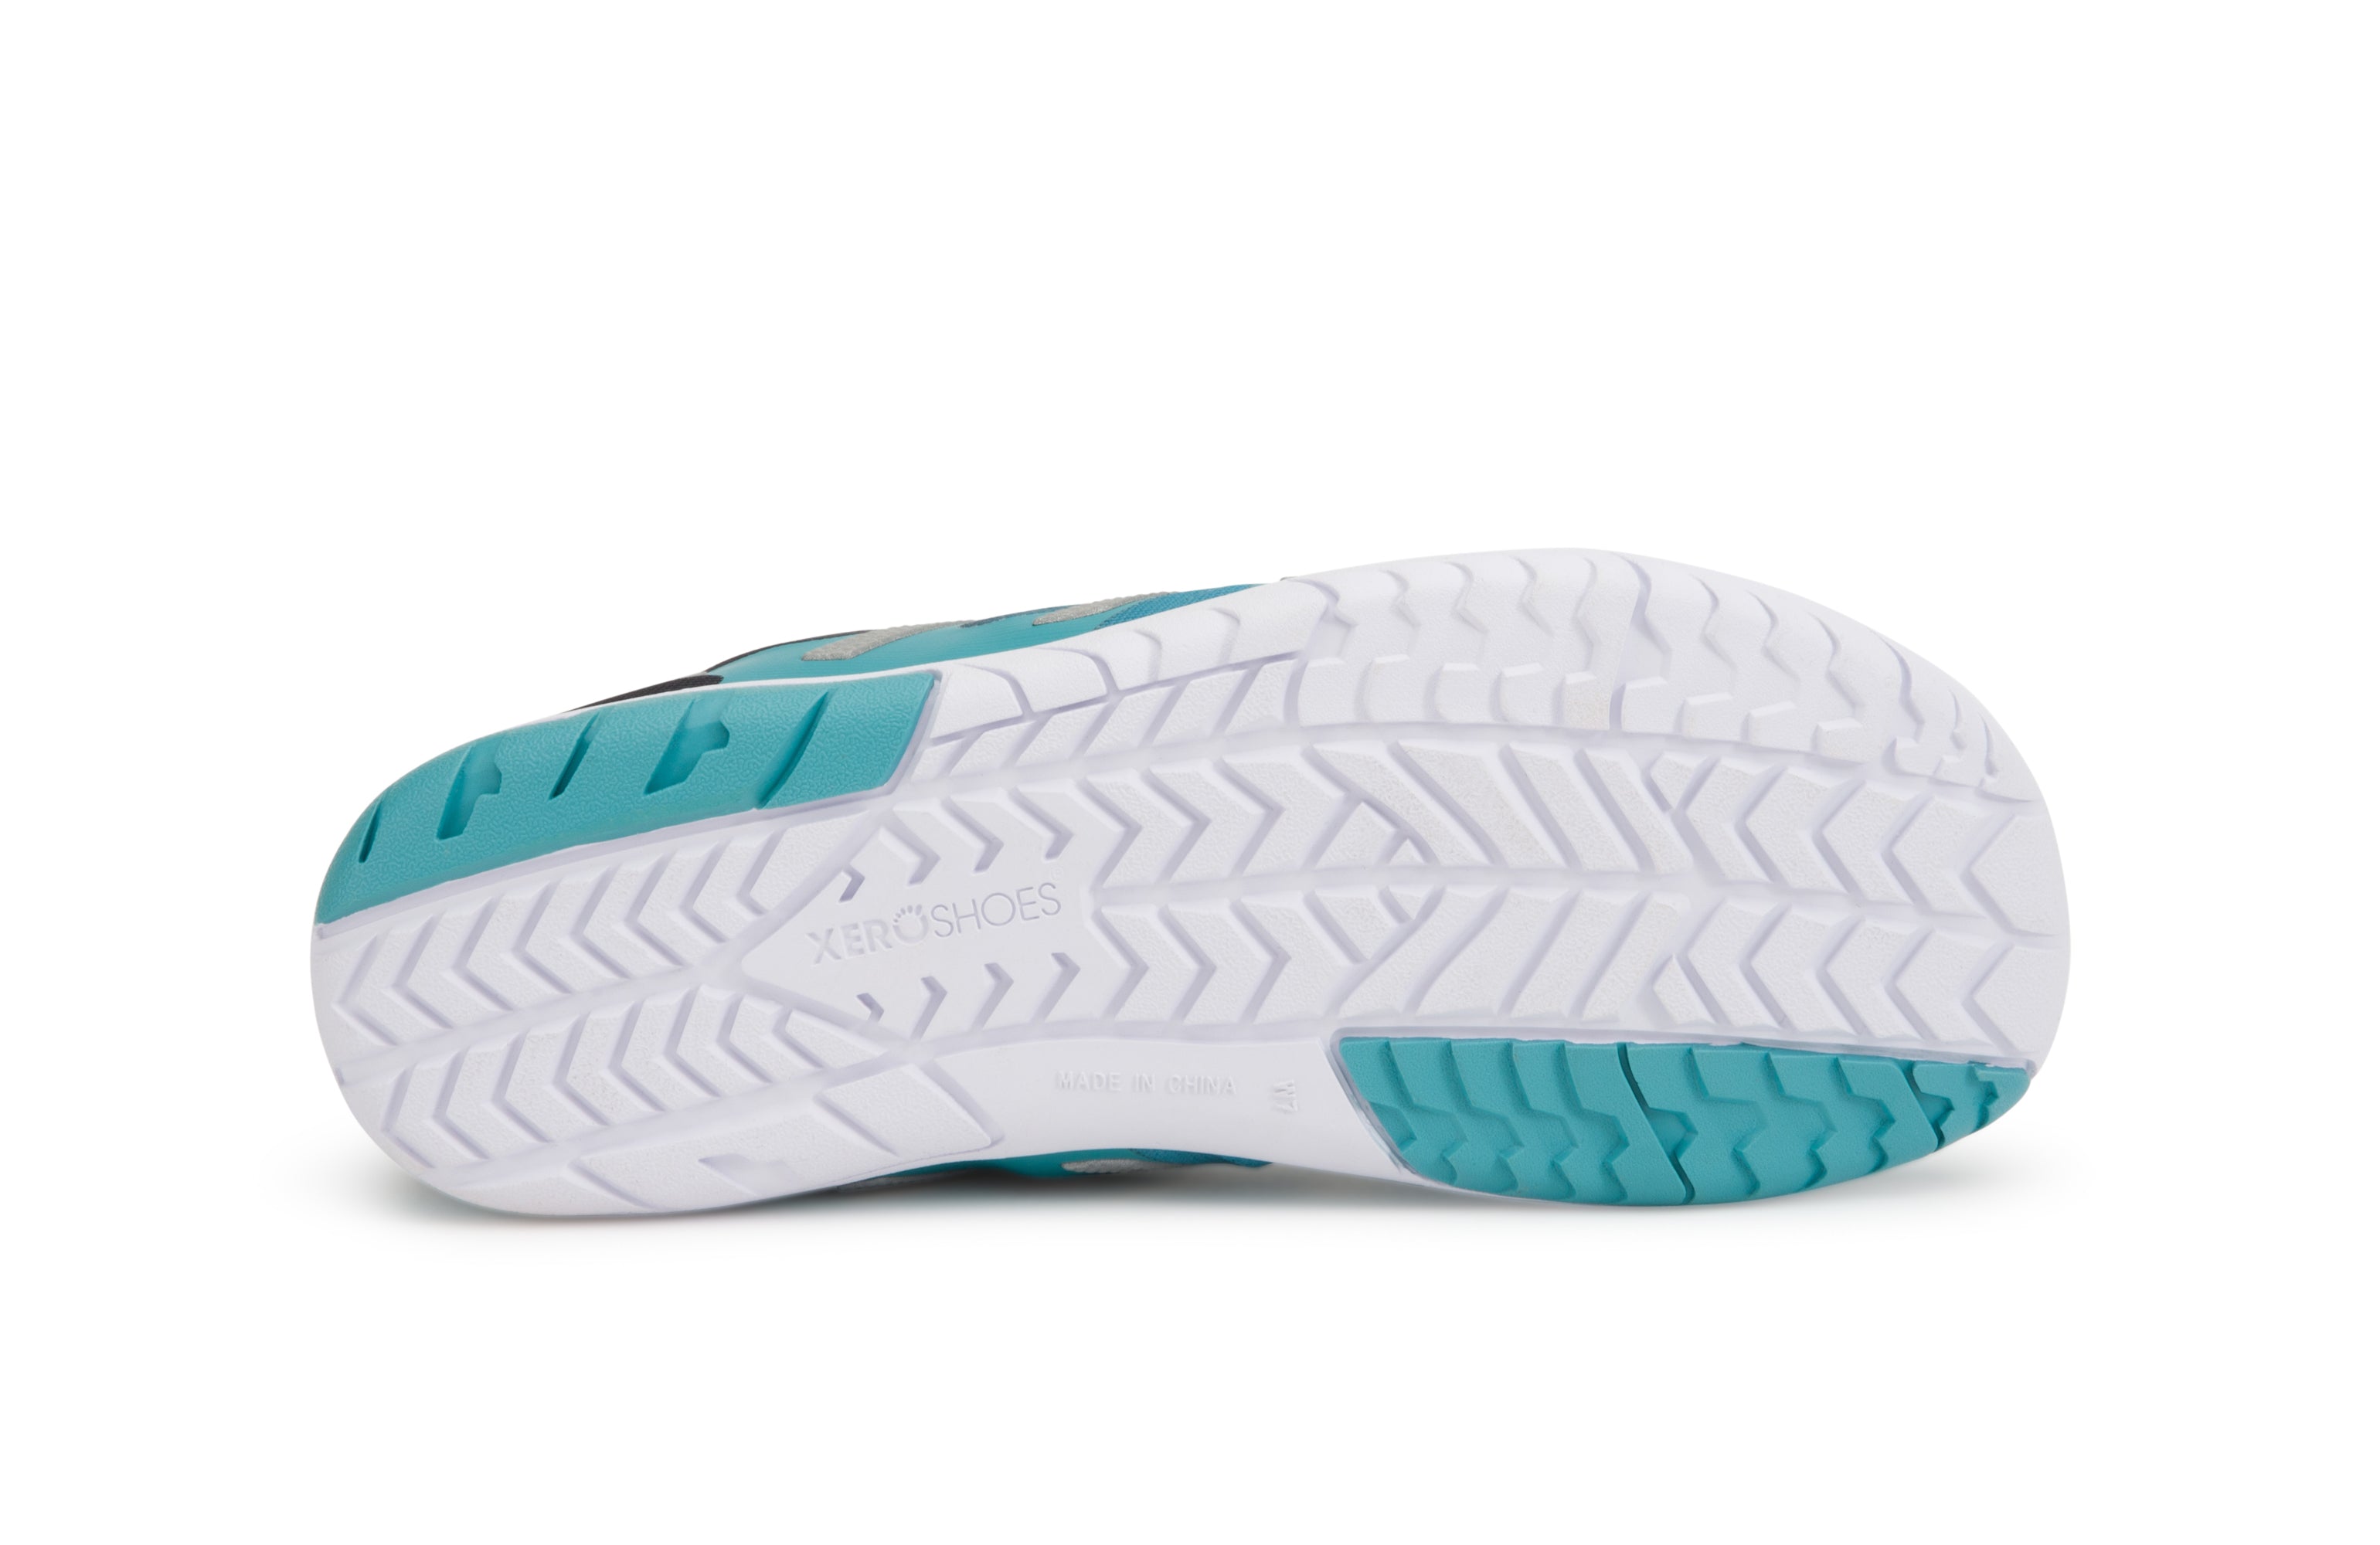 Xero Shoes HFS Womens barfods træningssko/løbesko til kvinder i farven porcelain blue, saal